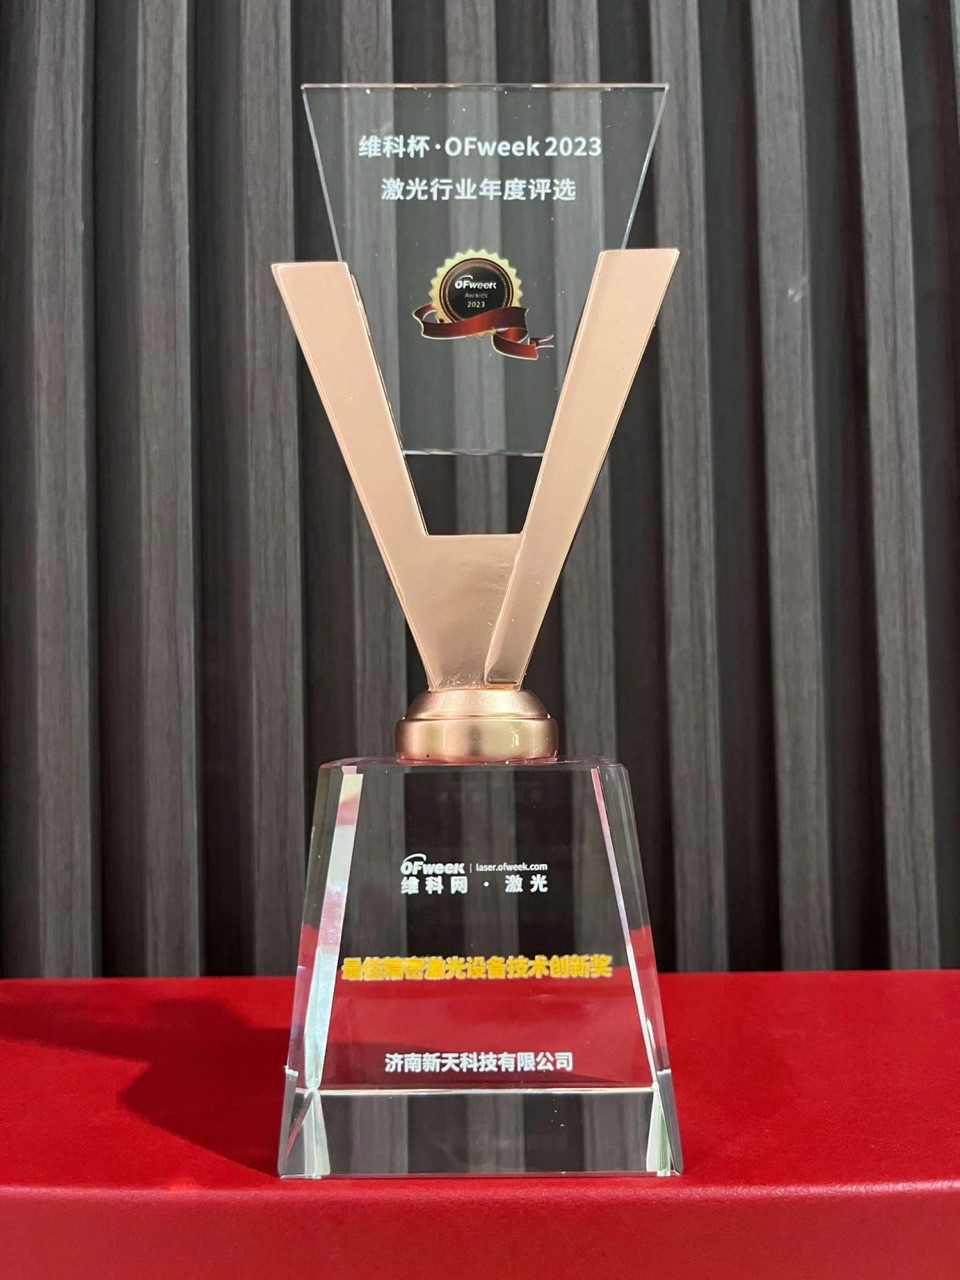 喜讯 | 新天激光获维科杯·OFweek2023激光行业年度最佳精密激光设备技术创新奖